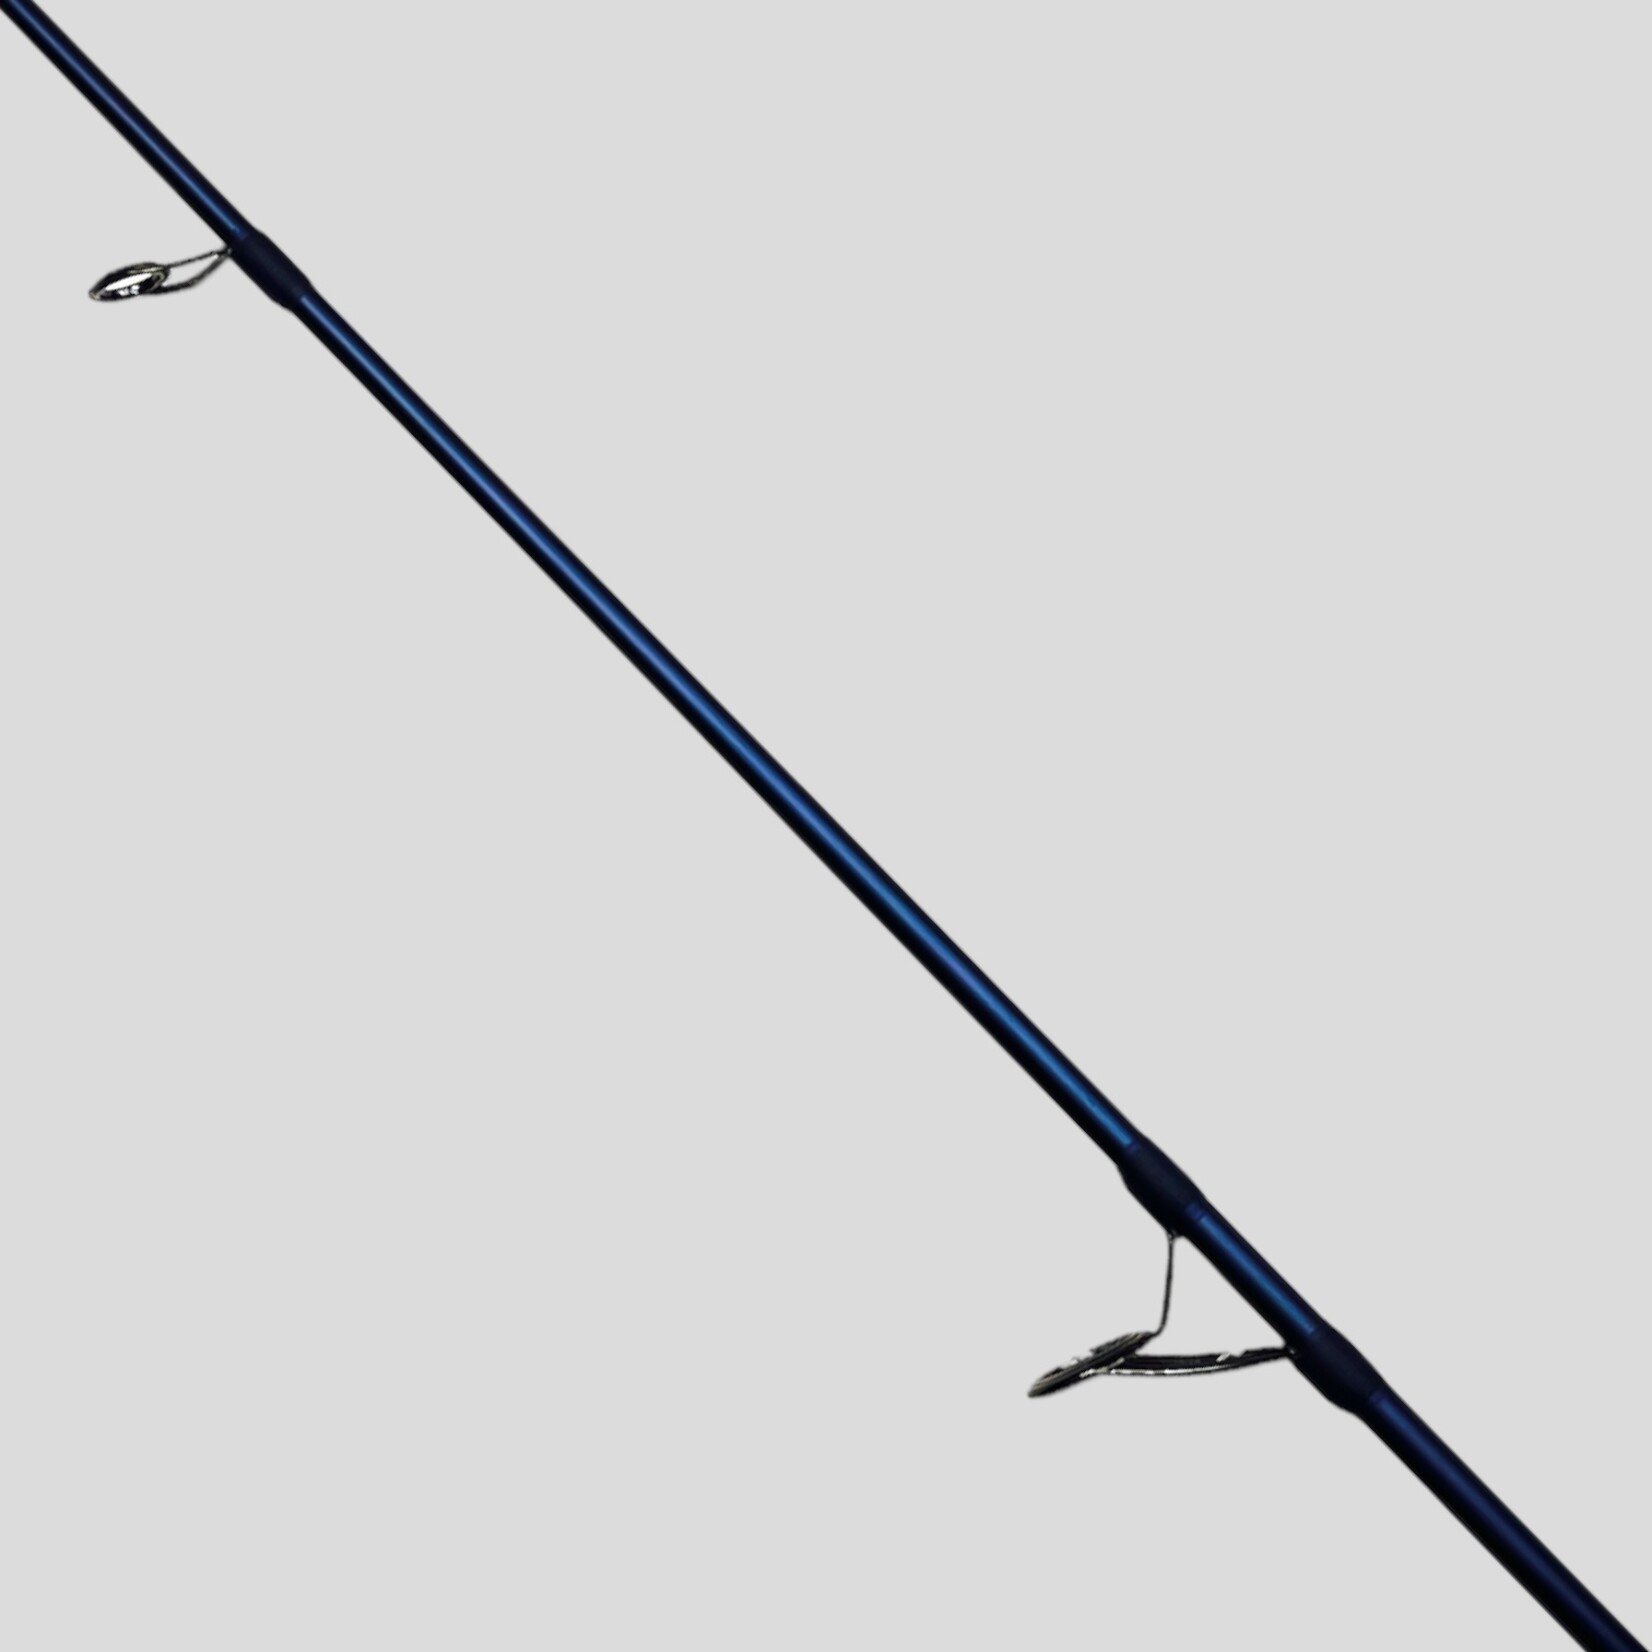 SaltX II Inshore Spinning Rod(TSSTXIS771H)